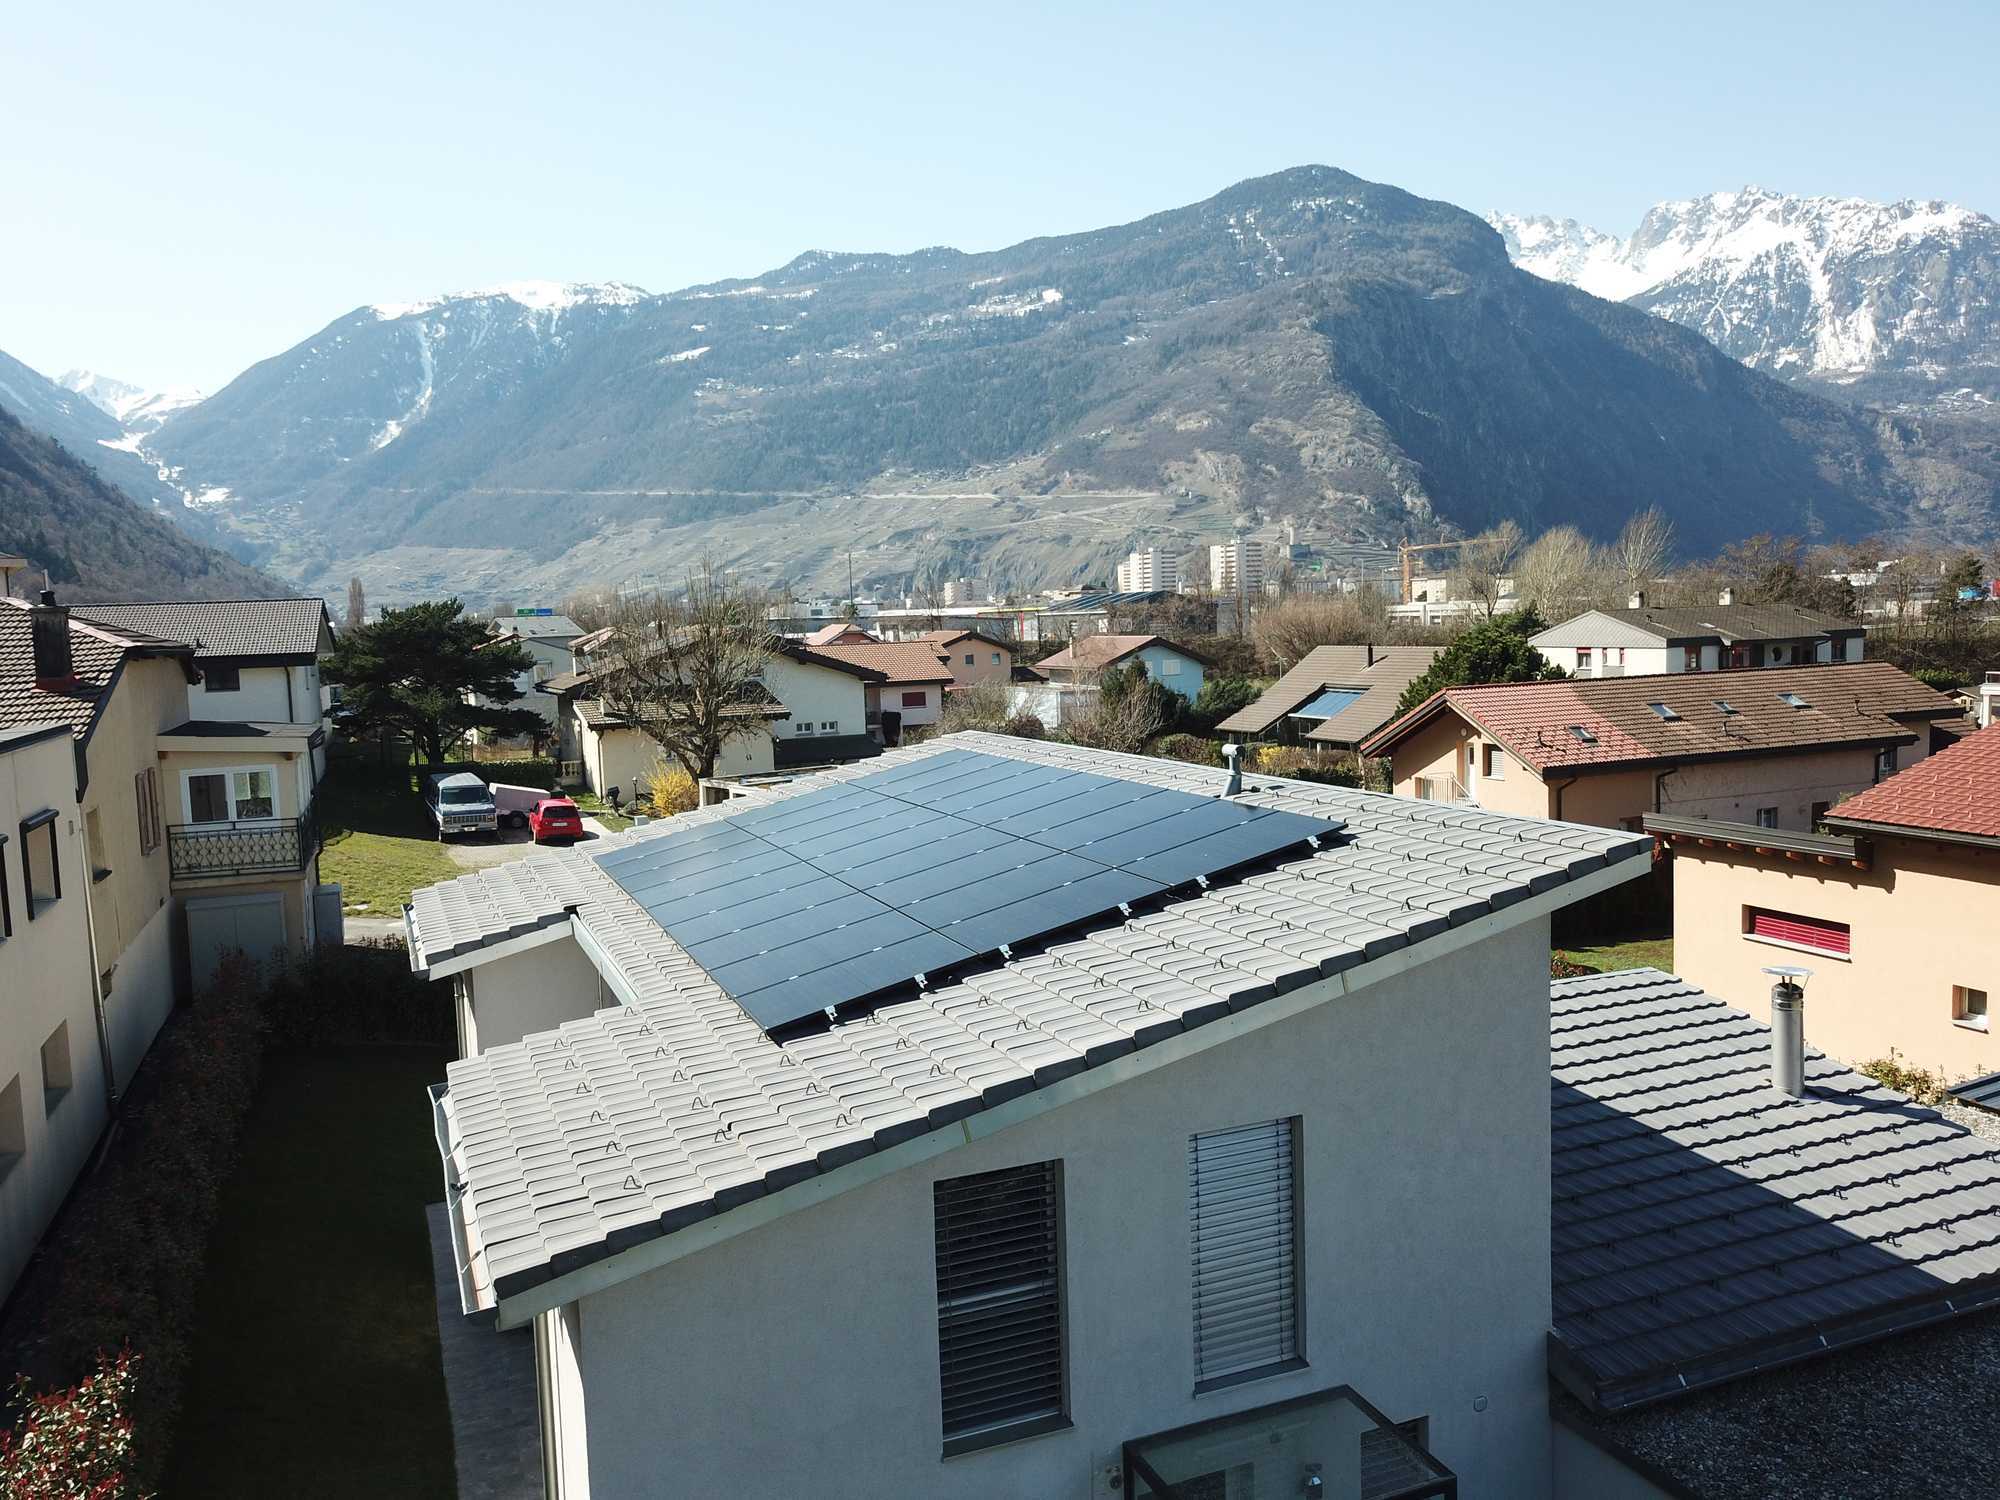 Un exemple d'une petite installation photovoltaïque installée sur un toit du quartier du Guercet à Martigny.